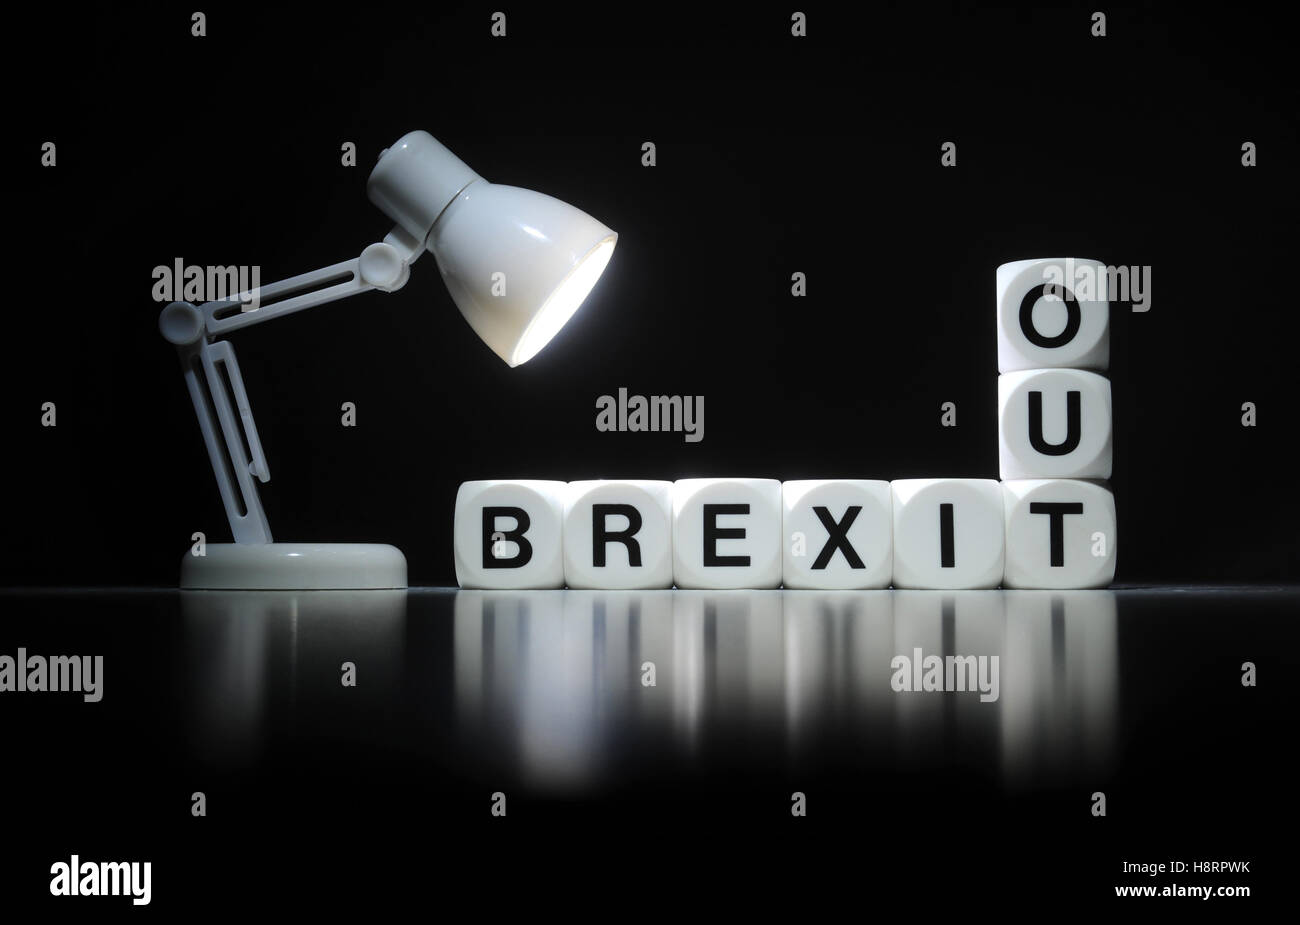 La palabra 'BREXIT Ortografía dados' y 'OUT' con Spotlight RE BREXIT LA UNIÓN EUROPEA dejan votar en referéndum BRITISH BRETAÑA EU UK Foto de stock